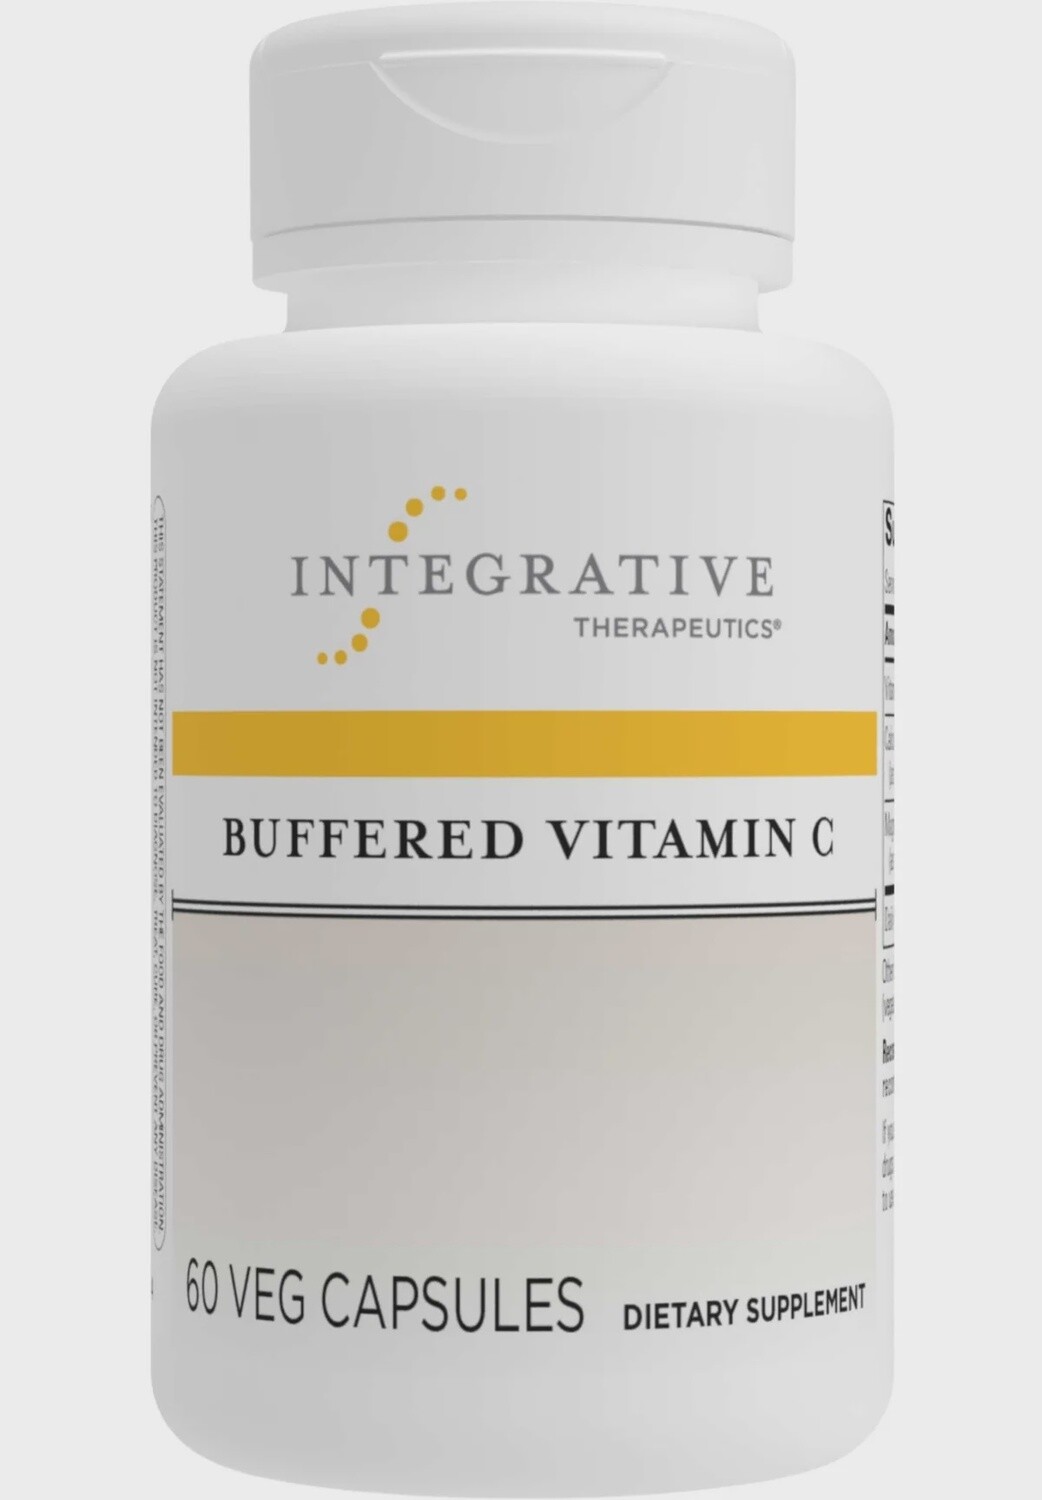 Integrative Therapeutics Buffered Vitamin C 60 count